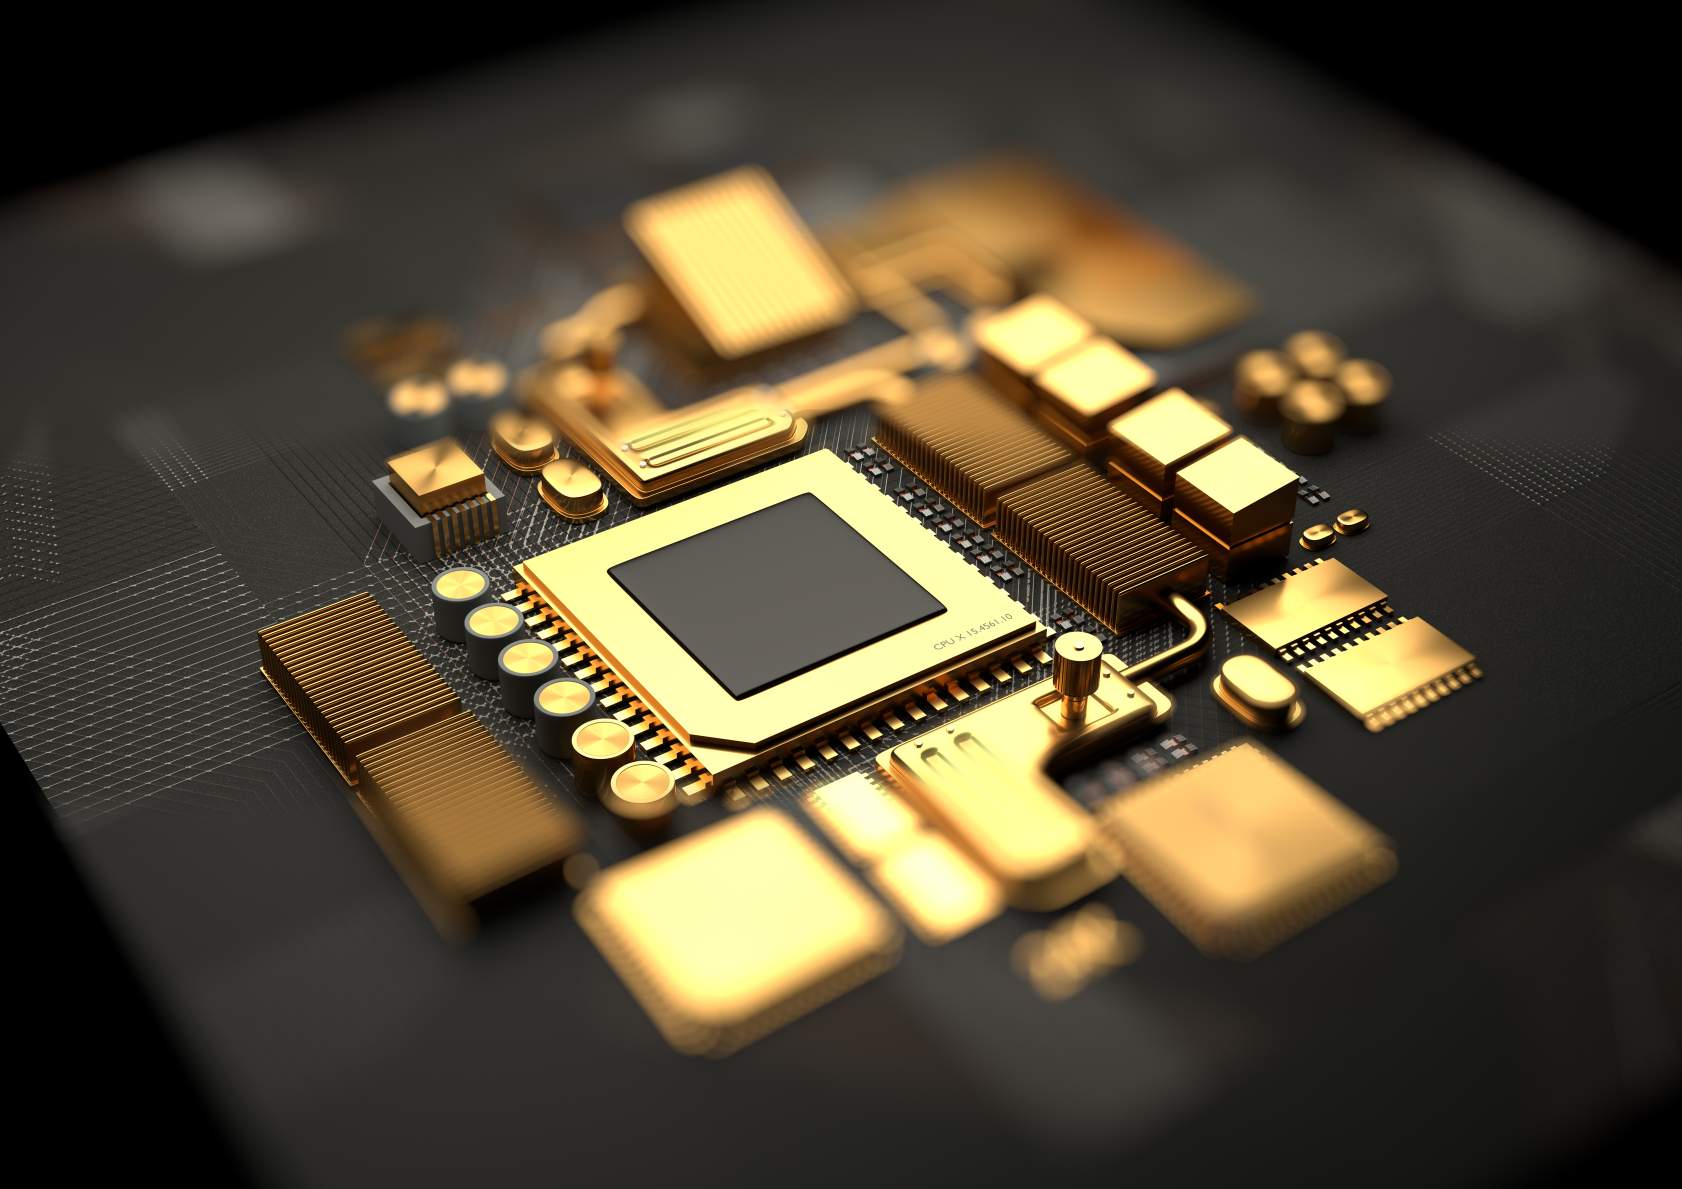 금으로 만든 CPU와 마더보드 칩셋 부품의 컨셉 이미지입니다. © 이미지 크레디트: Solarseven | DreamsTime.com에서 사용 허가됨(편집/상업적 사용 스톡 사진)